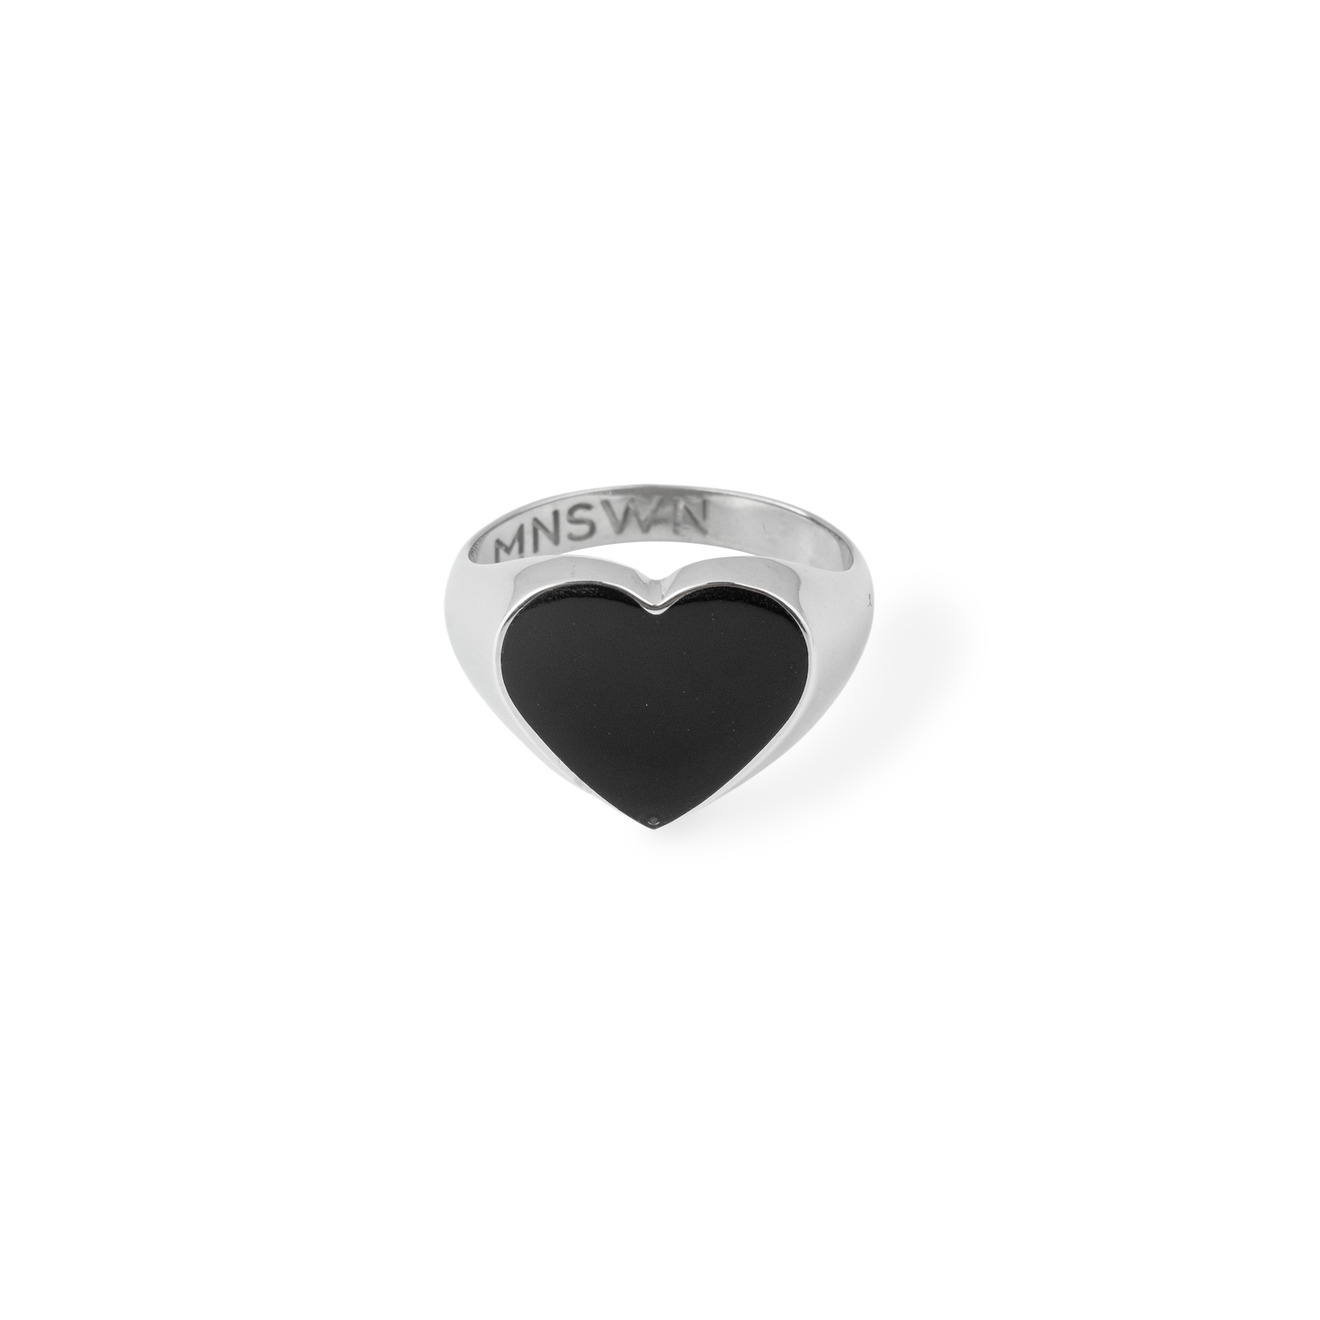 Moonswoon Кольцо-печатка из серебра с черным сердцем moonswoon широкое кольцо из серебра